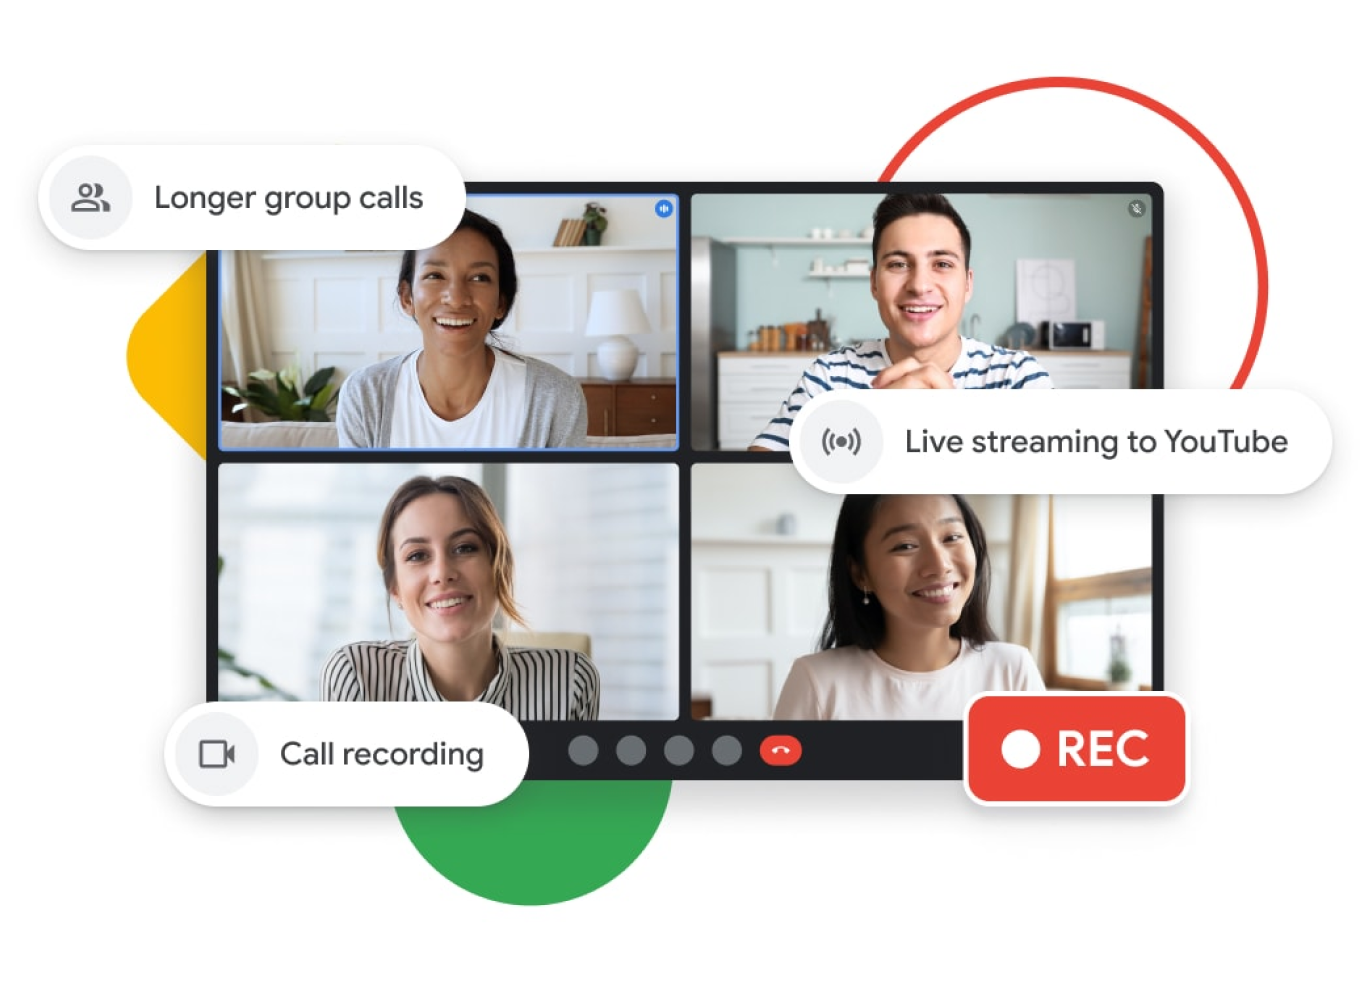 Représentation graphique d'un appel Google Meet avec des appels de groupe plus longs, le streaming en direct sur YouTube et l'enregistrement des appels.